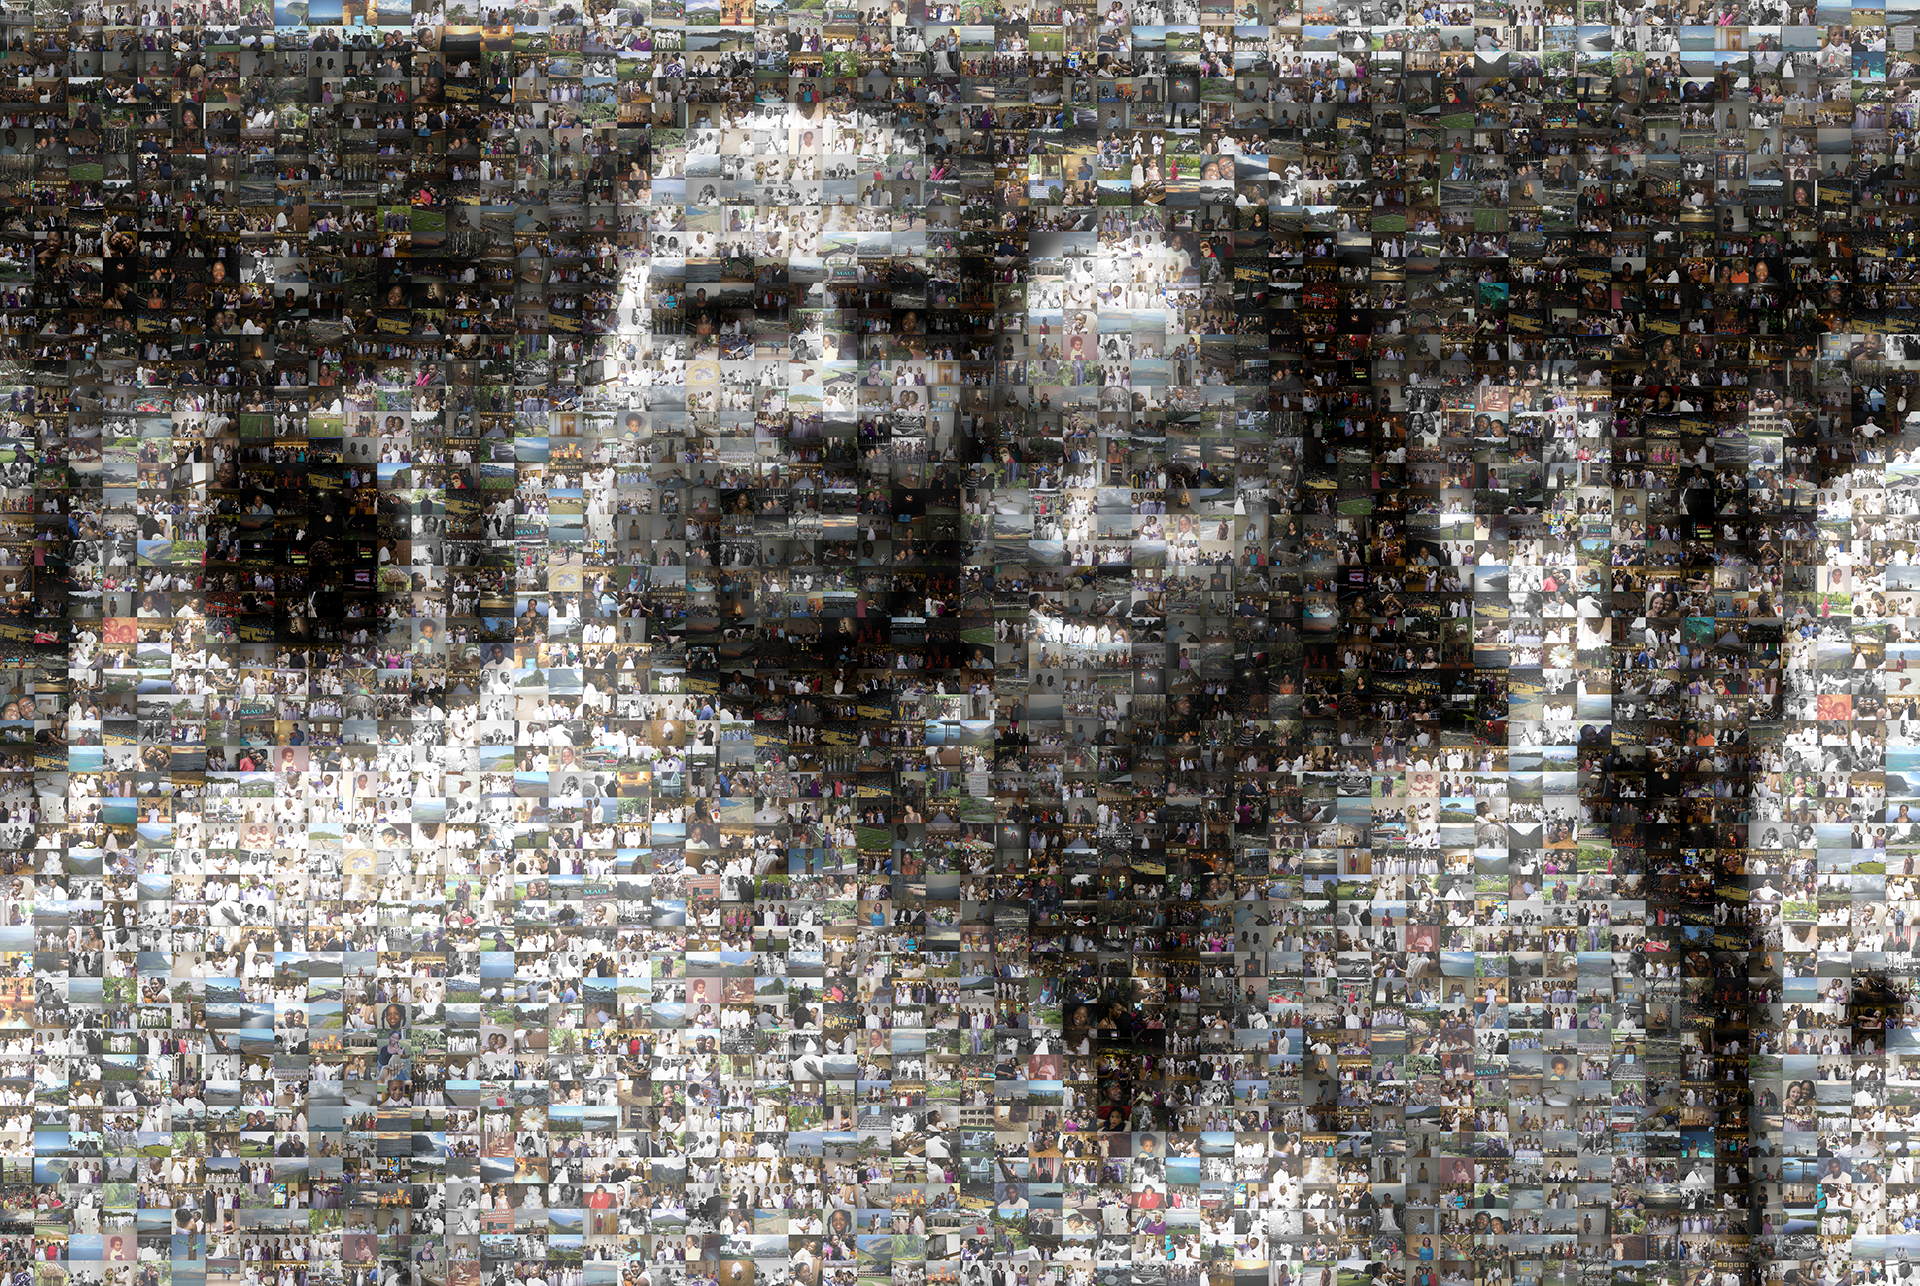 photo mosaic created using 1,177 wedding photos